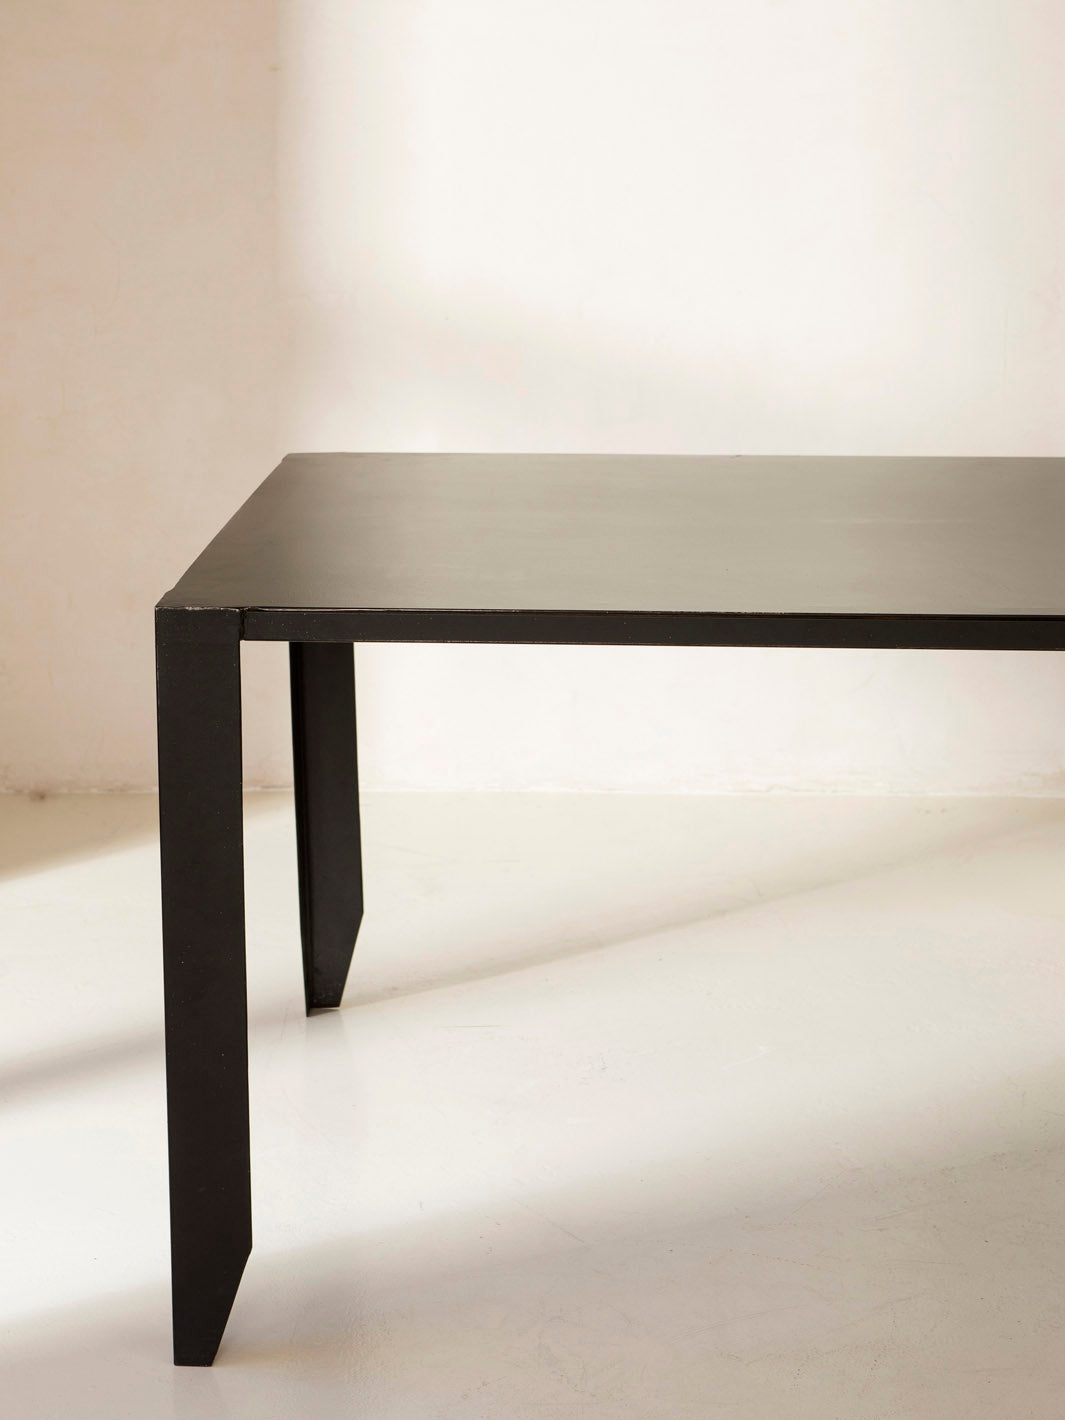 Table en métal noir